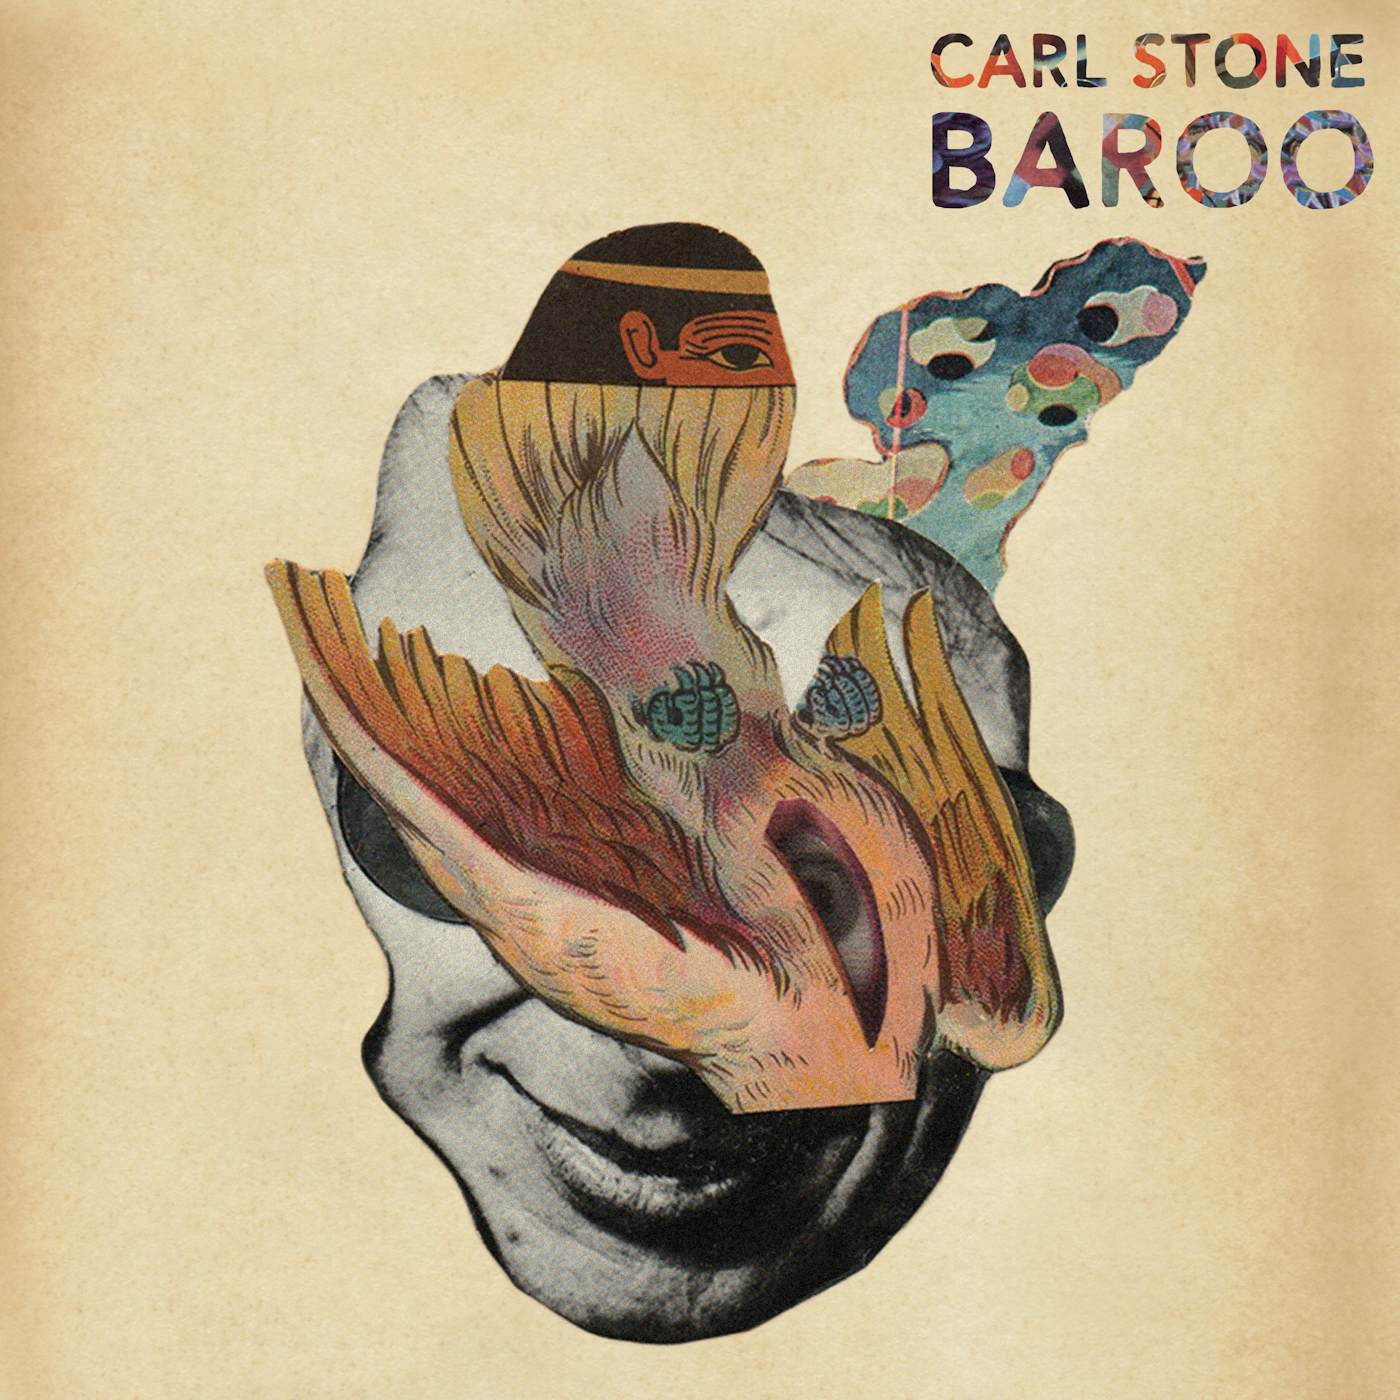 Carl Stone Baroo Vinyl Record